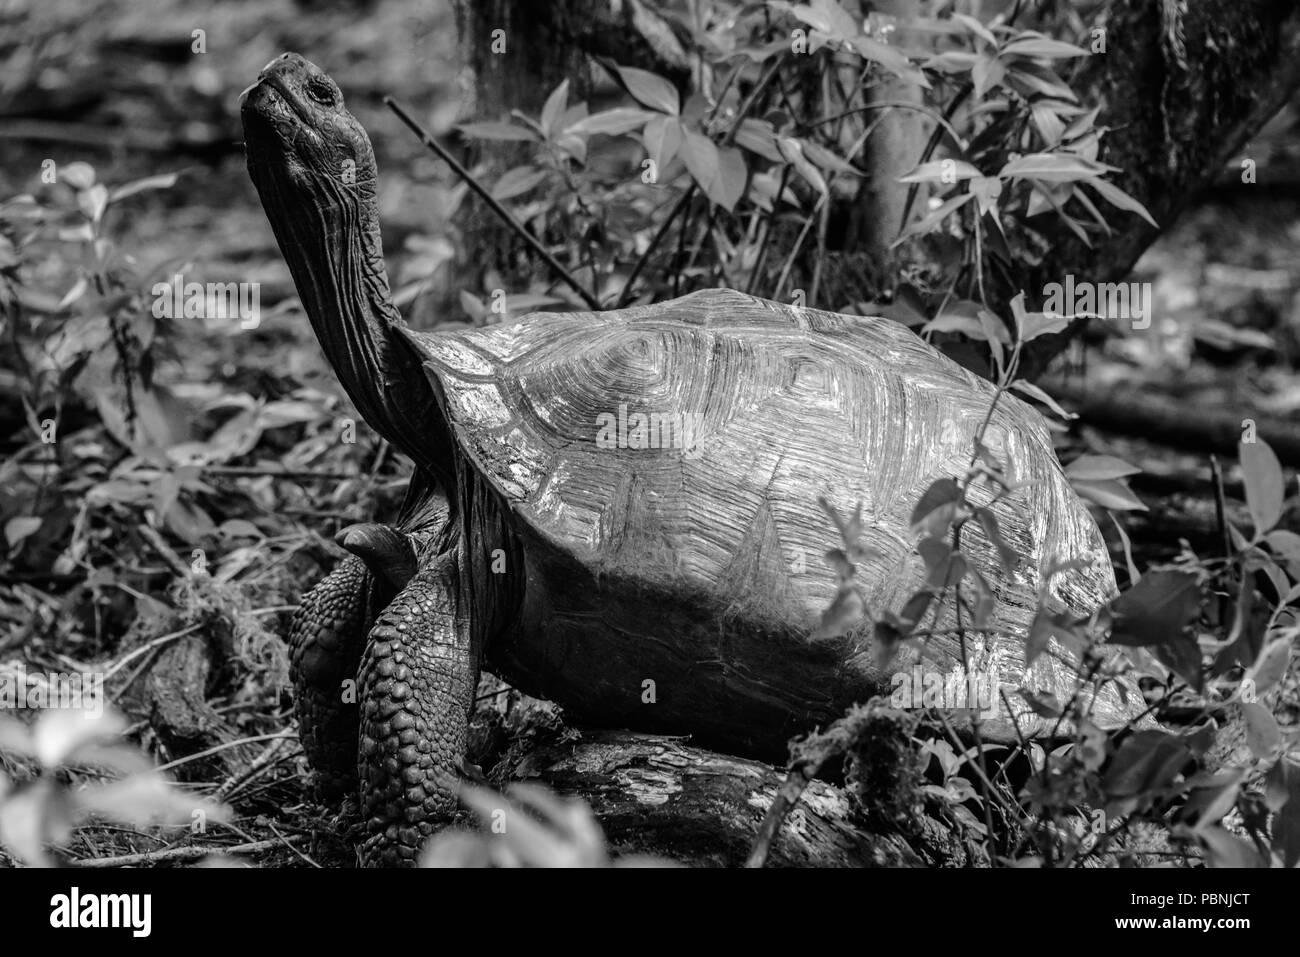 La tortue géante dans le cou de défense dans les îles Galapagos, Equateur, Amérique du Sud Banque D'Images